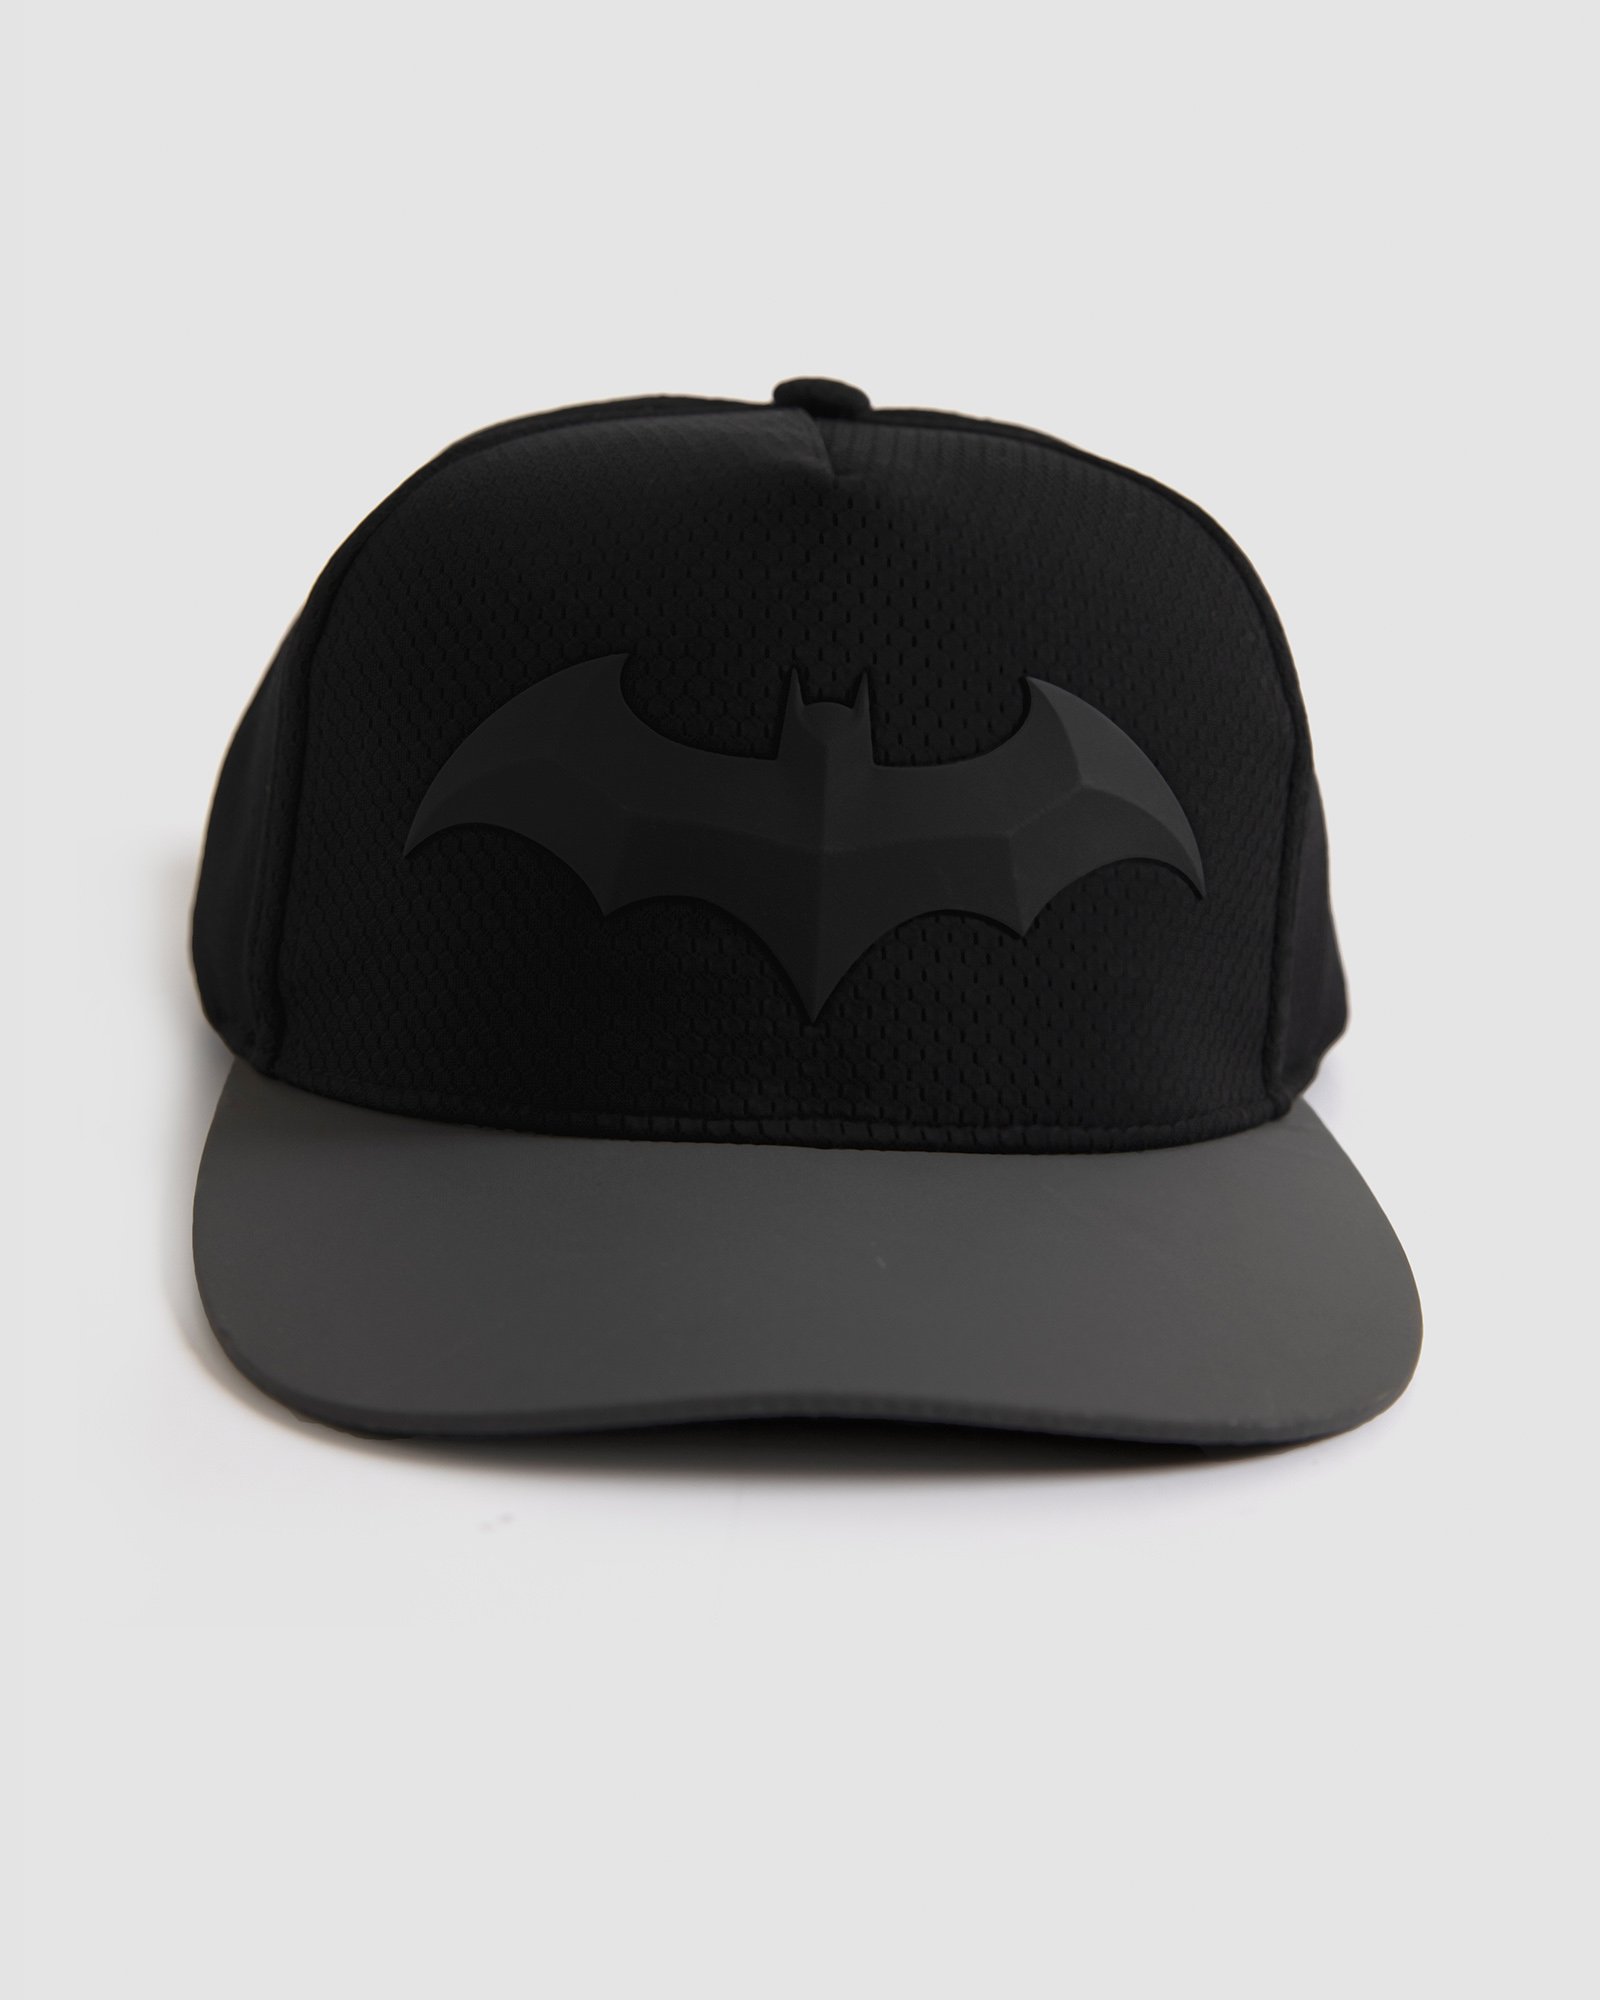 Batman P-Cap